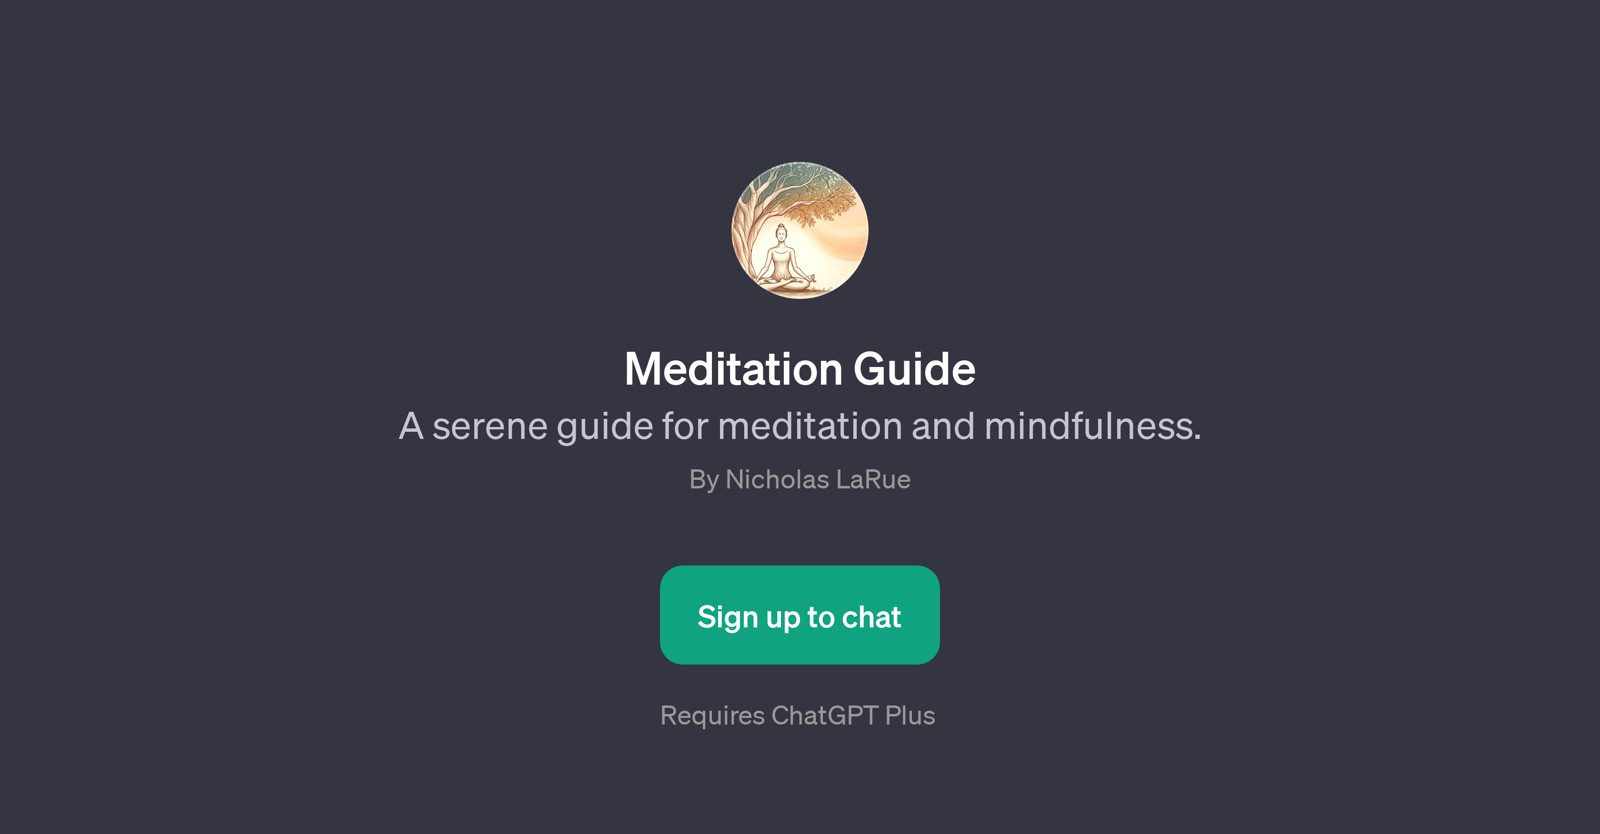 Meditation Guide website